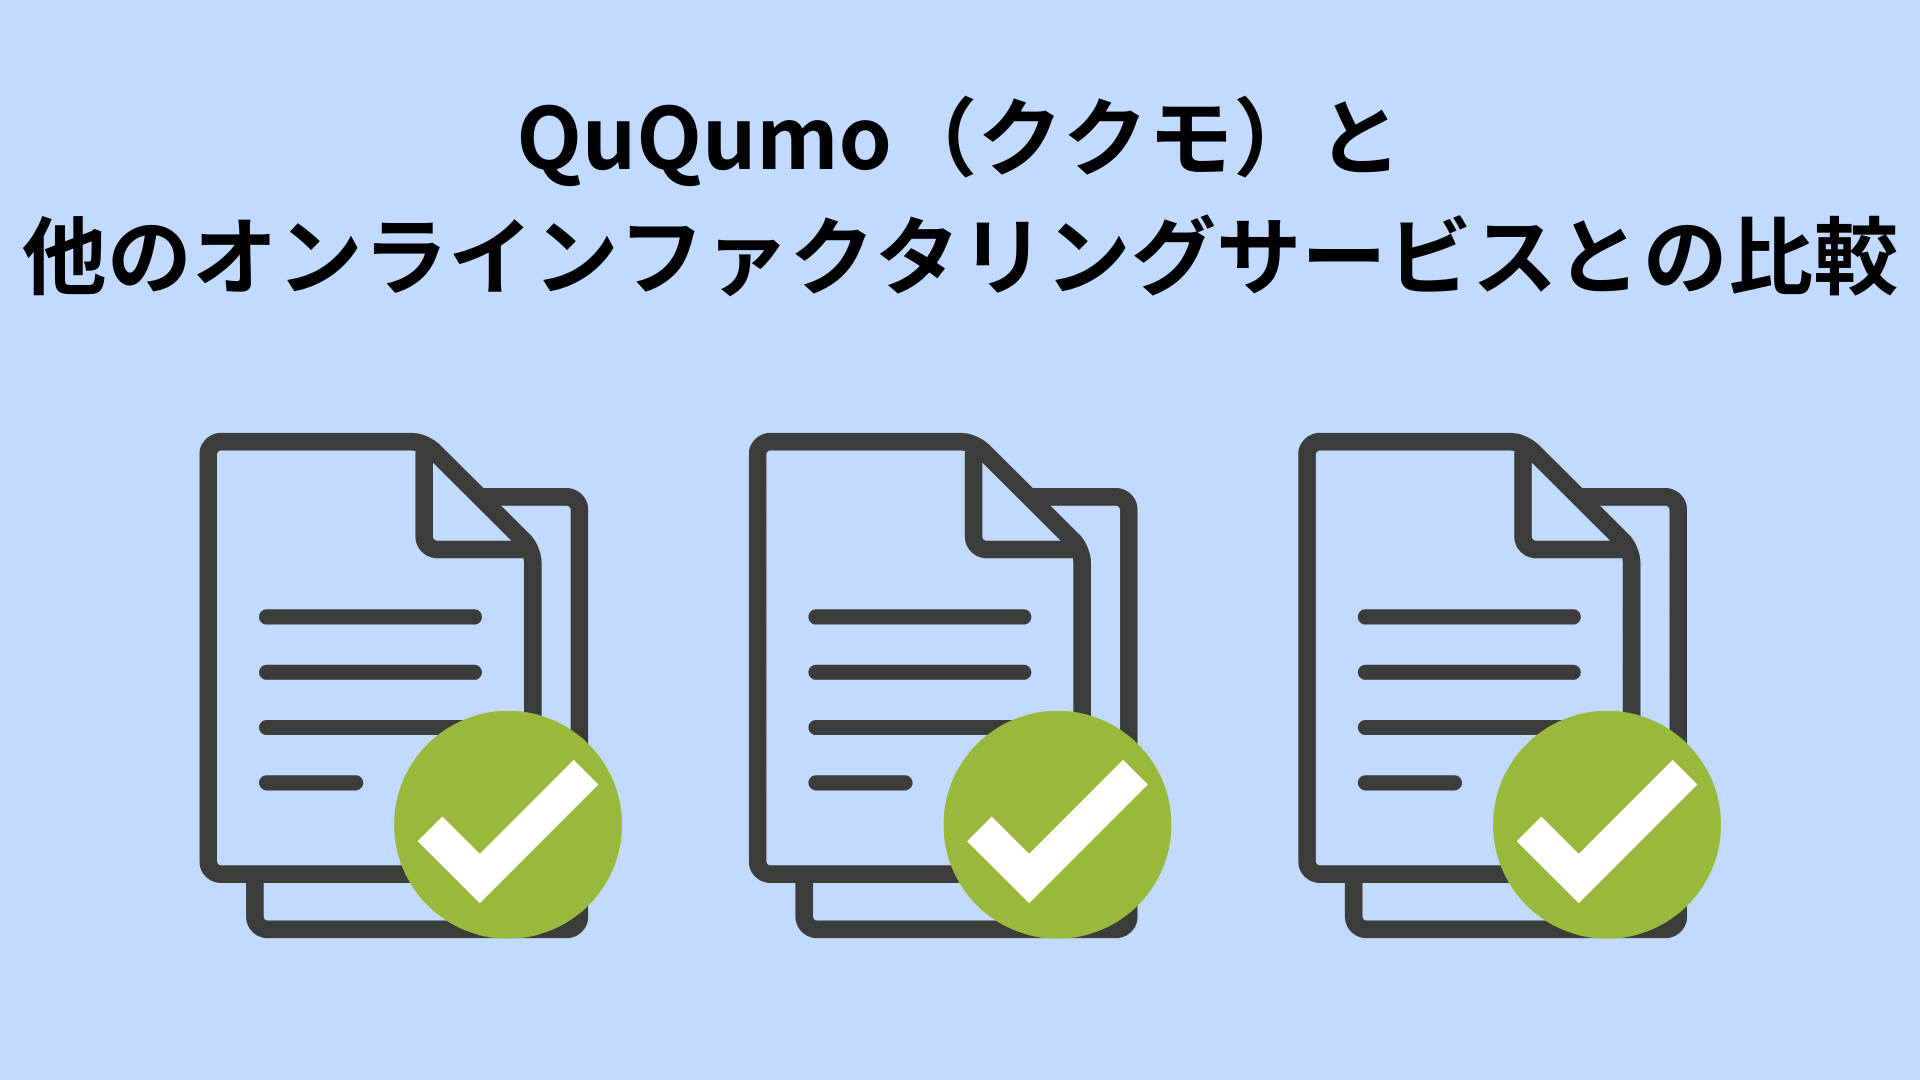 QuQumo（ククモ）と他のオンラインファクタリングサービスとの比較